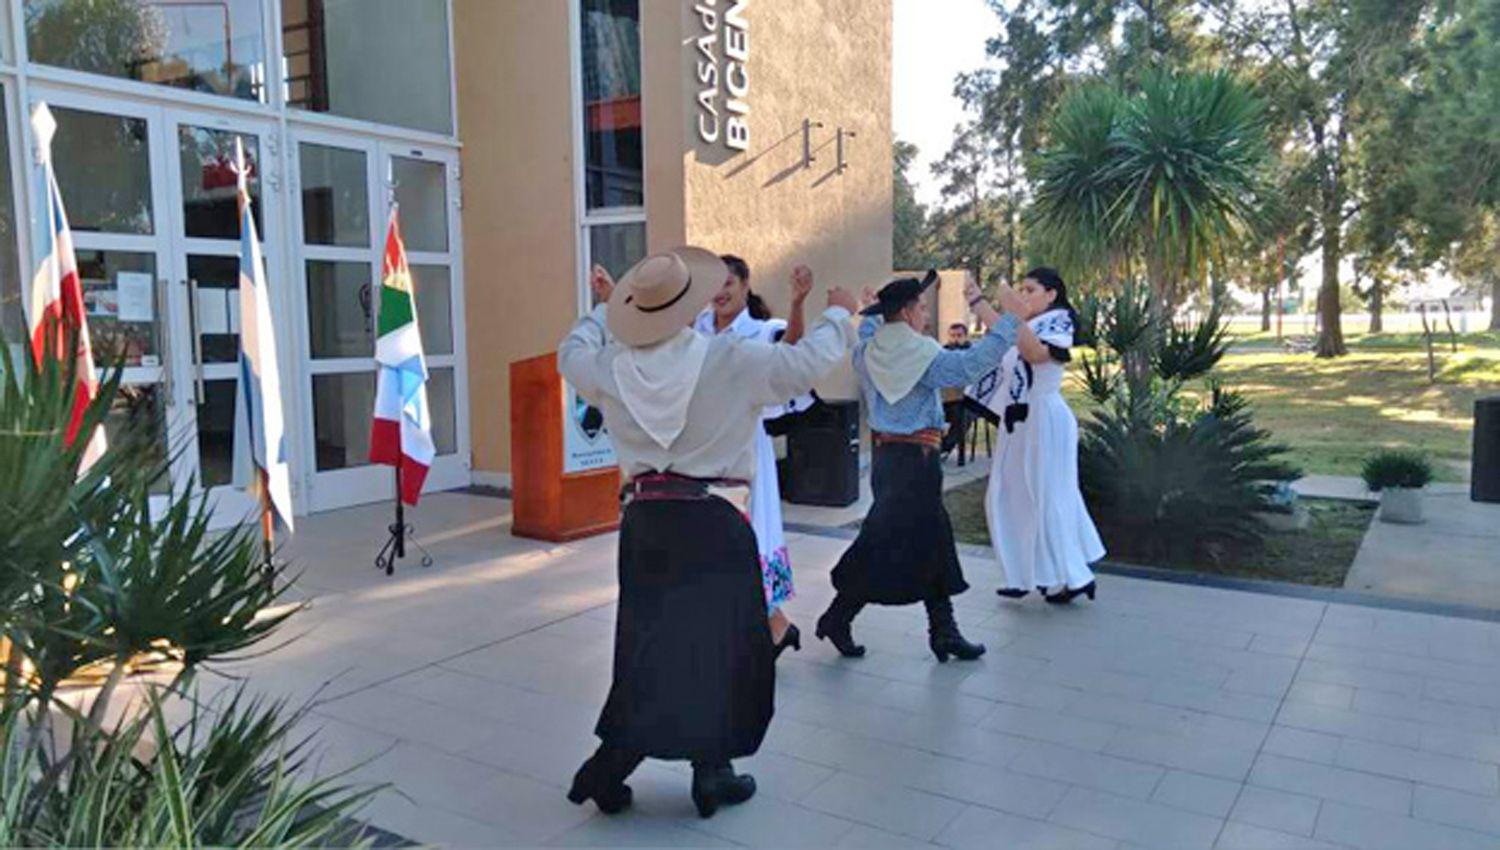 Las danzas tradicionales estuvieron presentes en la celebración
realizada en la Casa de la Historia y la Cultura del Bicentenario